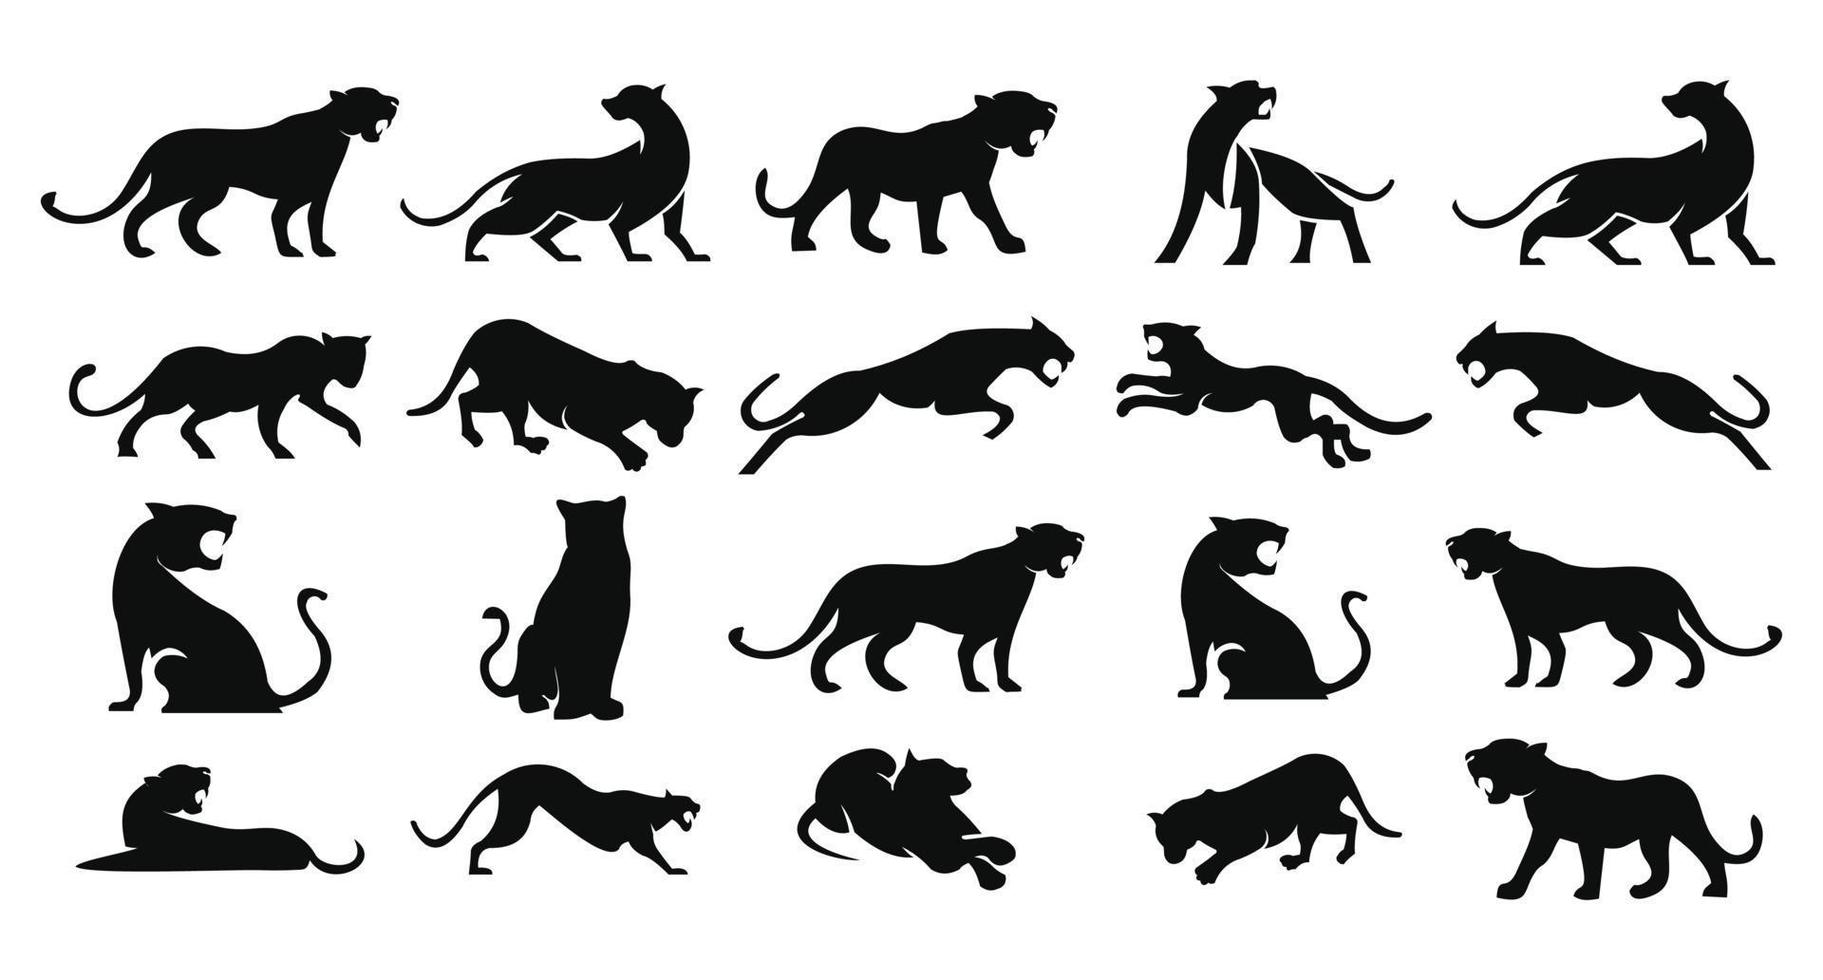 leopardos, puma, pantera e silhueta de ação de tigre. bom uso para símbolo, logotipo, ícone da web, mascote, sinal, adesivo vetor